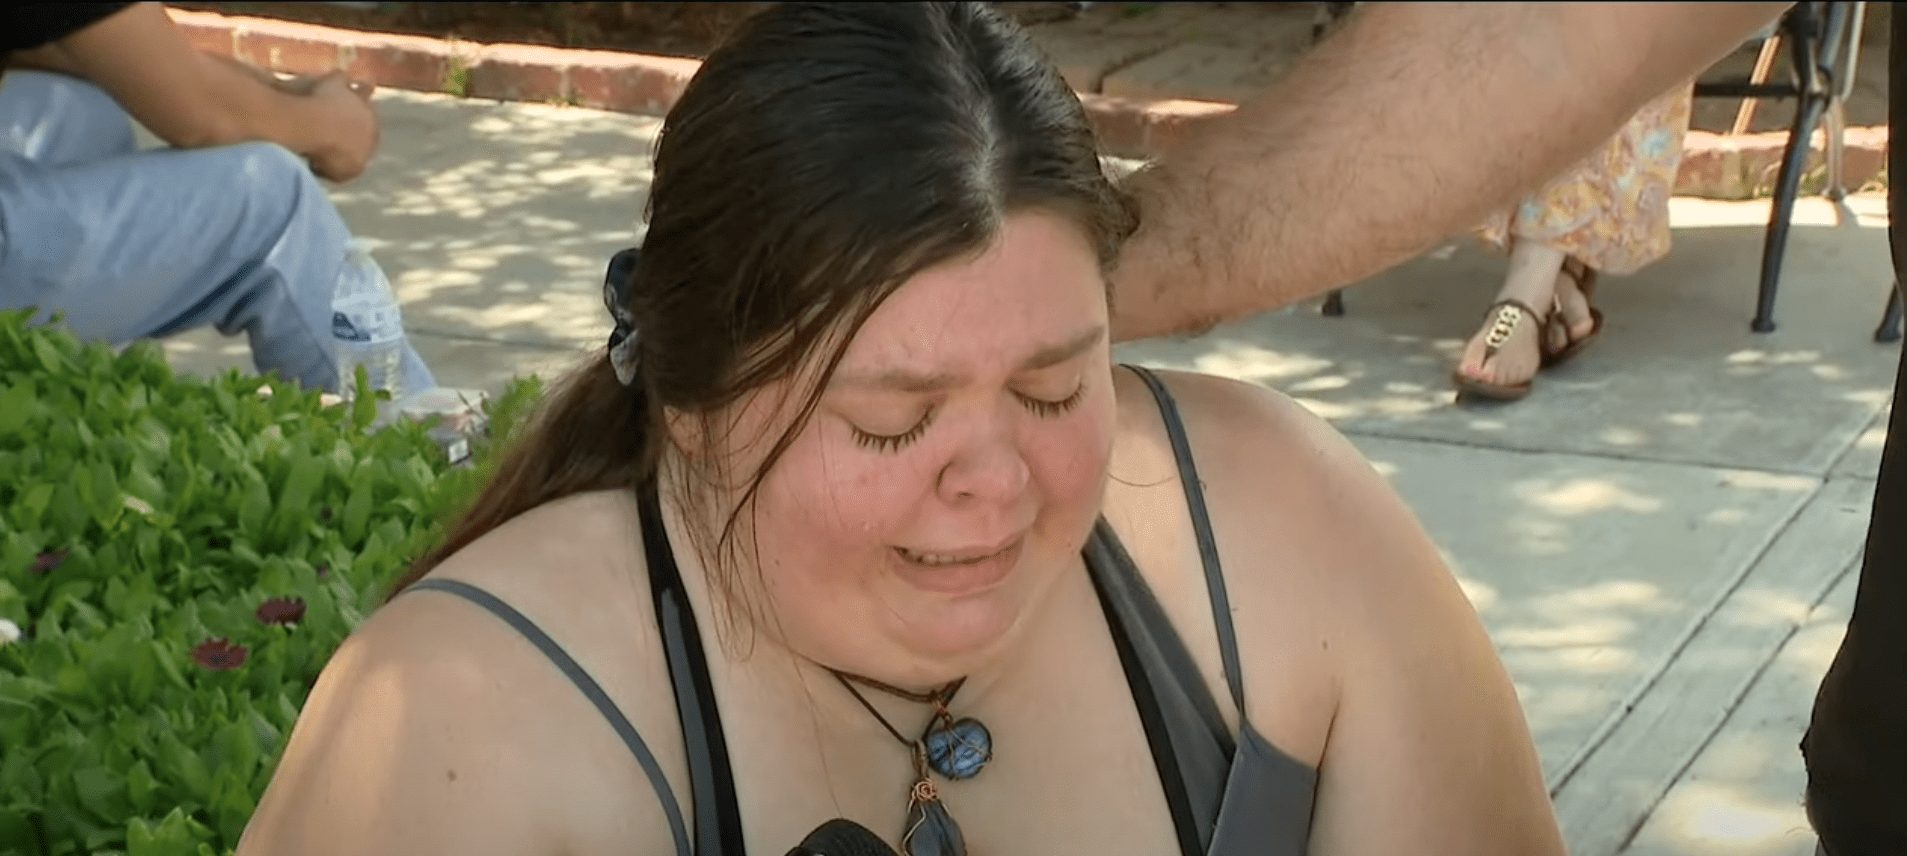 Dawn Garate, die Mutter des 7-jährigen Gabriel, weint | Quelle: Youtube/FOX 11 Los Angeles